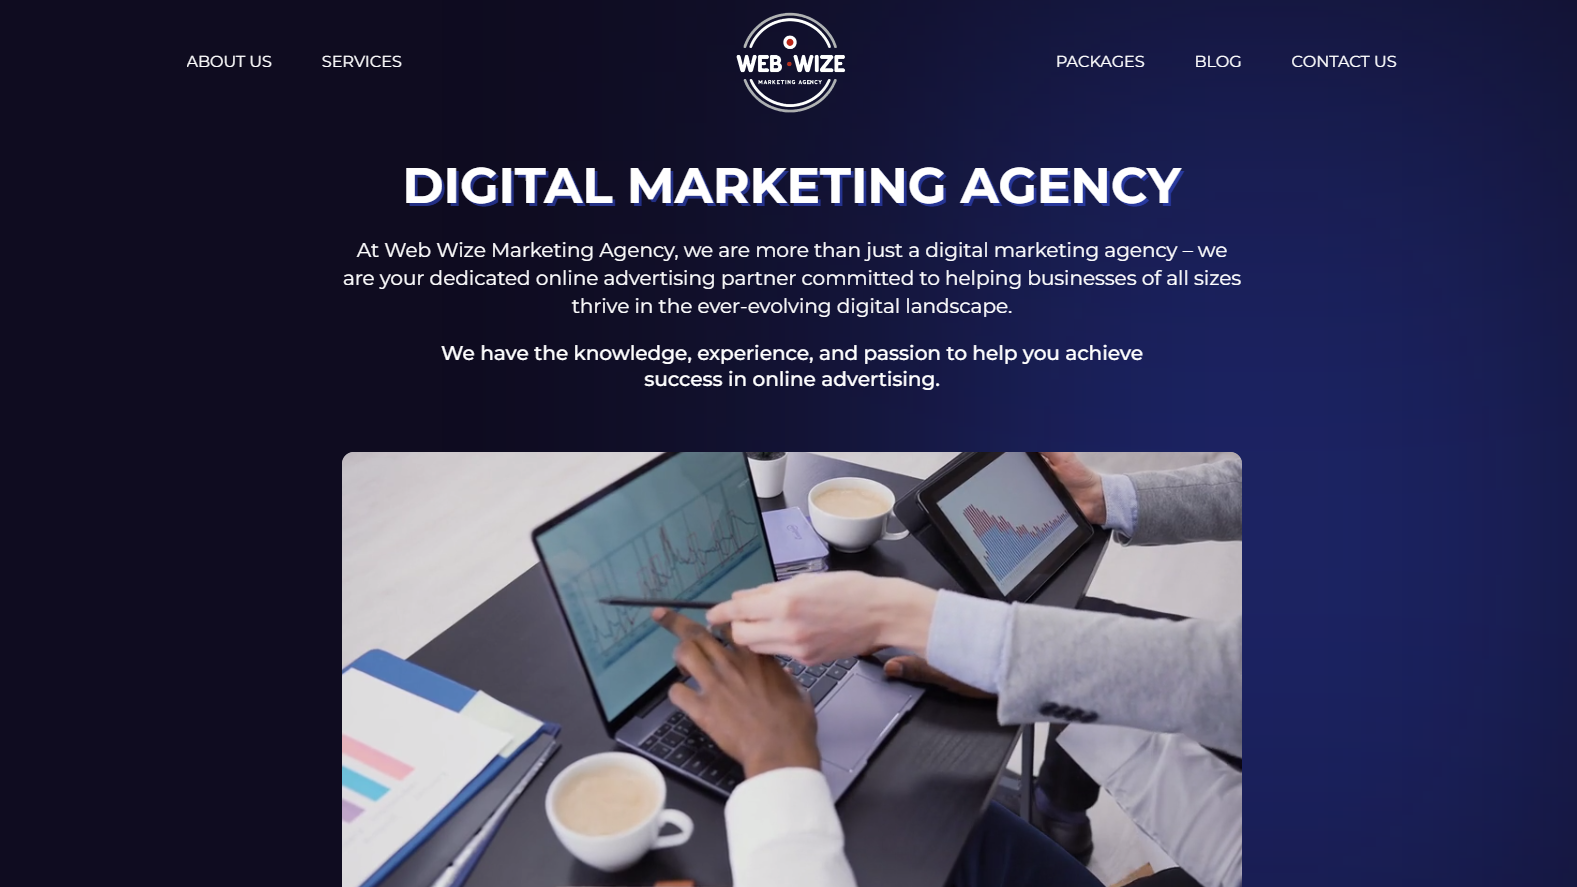 Web Wize Marketing Agency